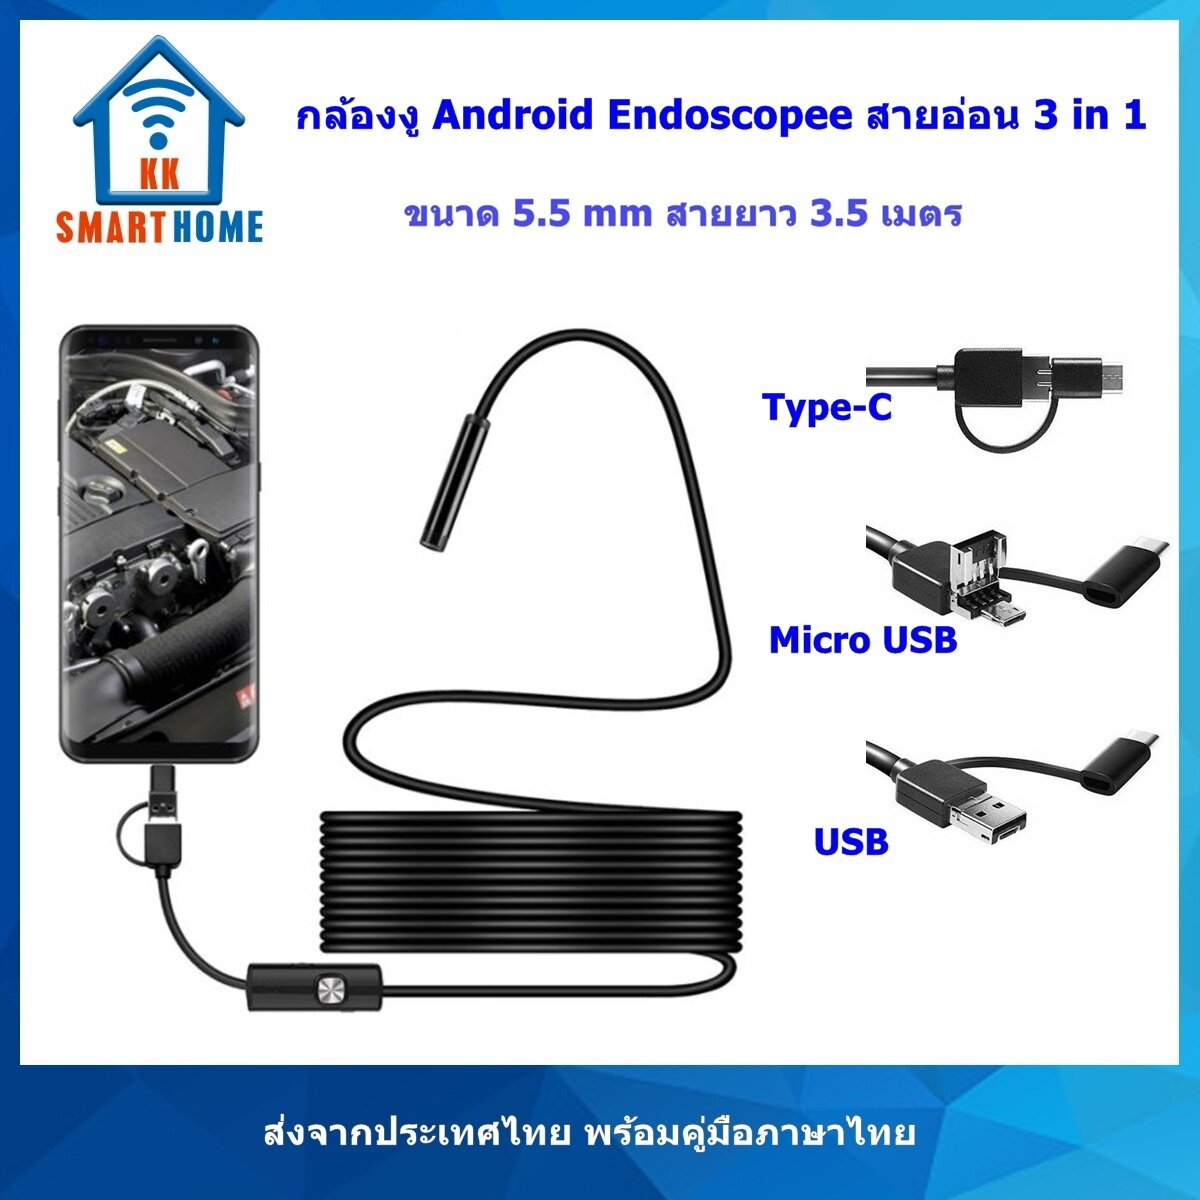 กล้องงู Android Endoscopic สายยาว 3.5 ม. 640x480 ใช้กับ Android ที่รองรับ USB2.0 OTG เท่านั้น